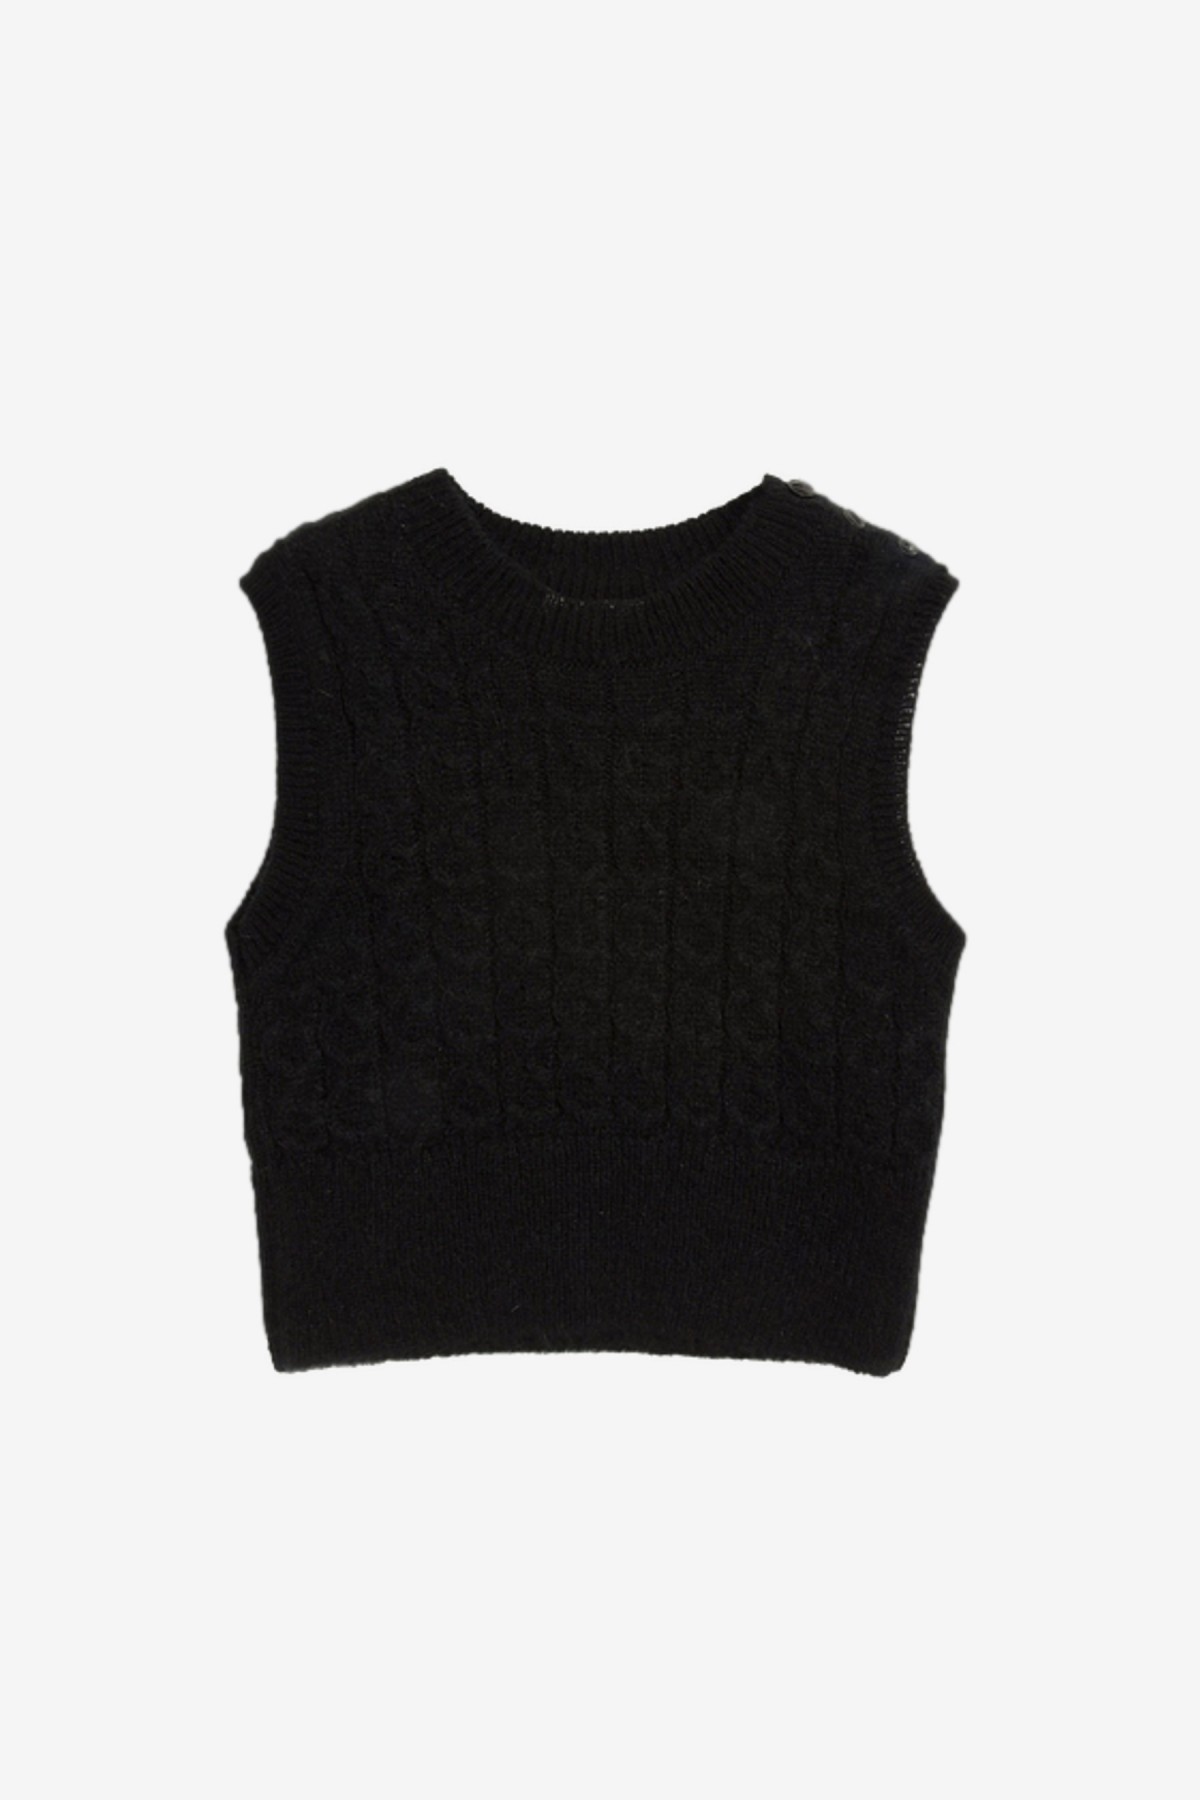 YMC You Must Create Farrow Knit in Black